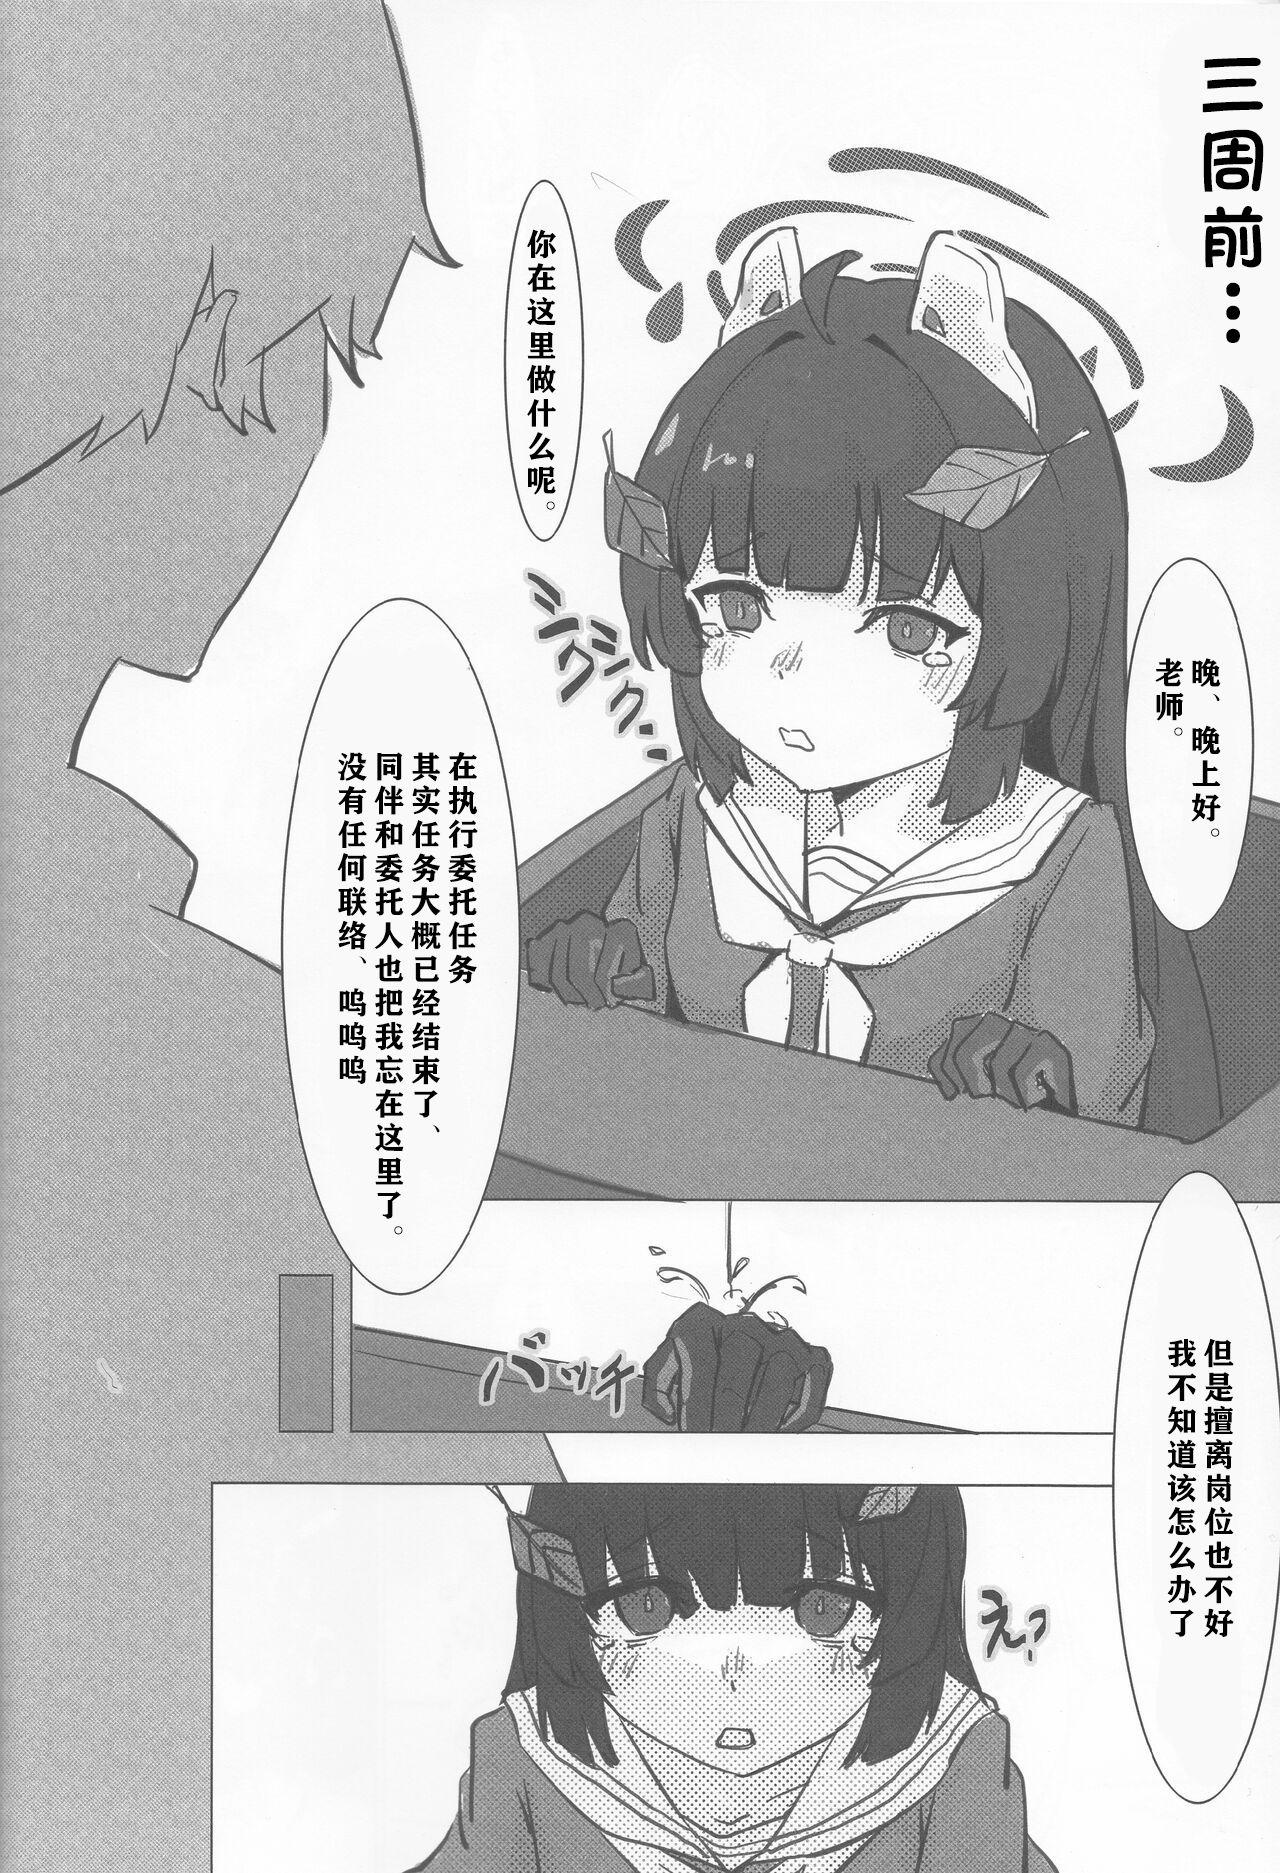 Horny Sluts Miyu no Tokusei Kosu |美游的定制cos - Blue archive Culo - Page 5